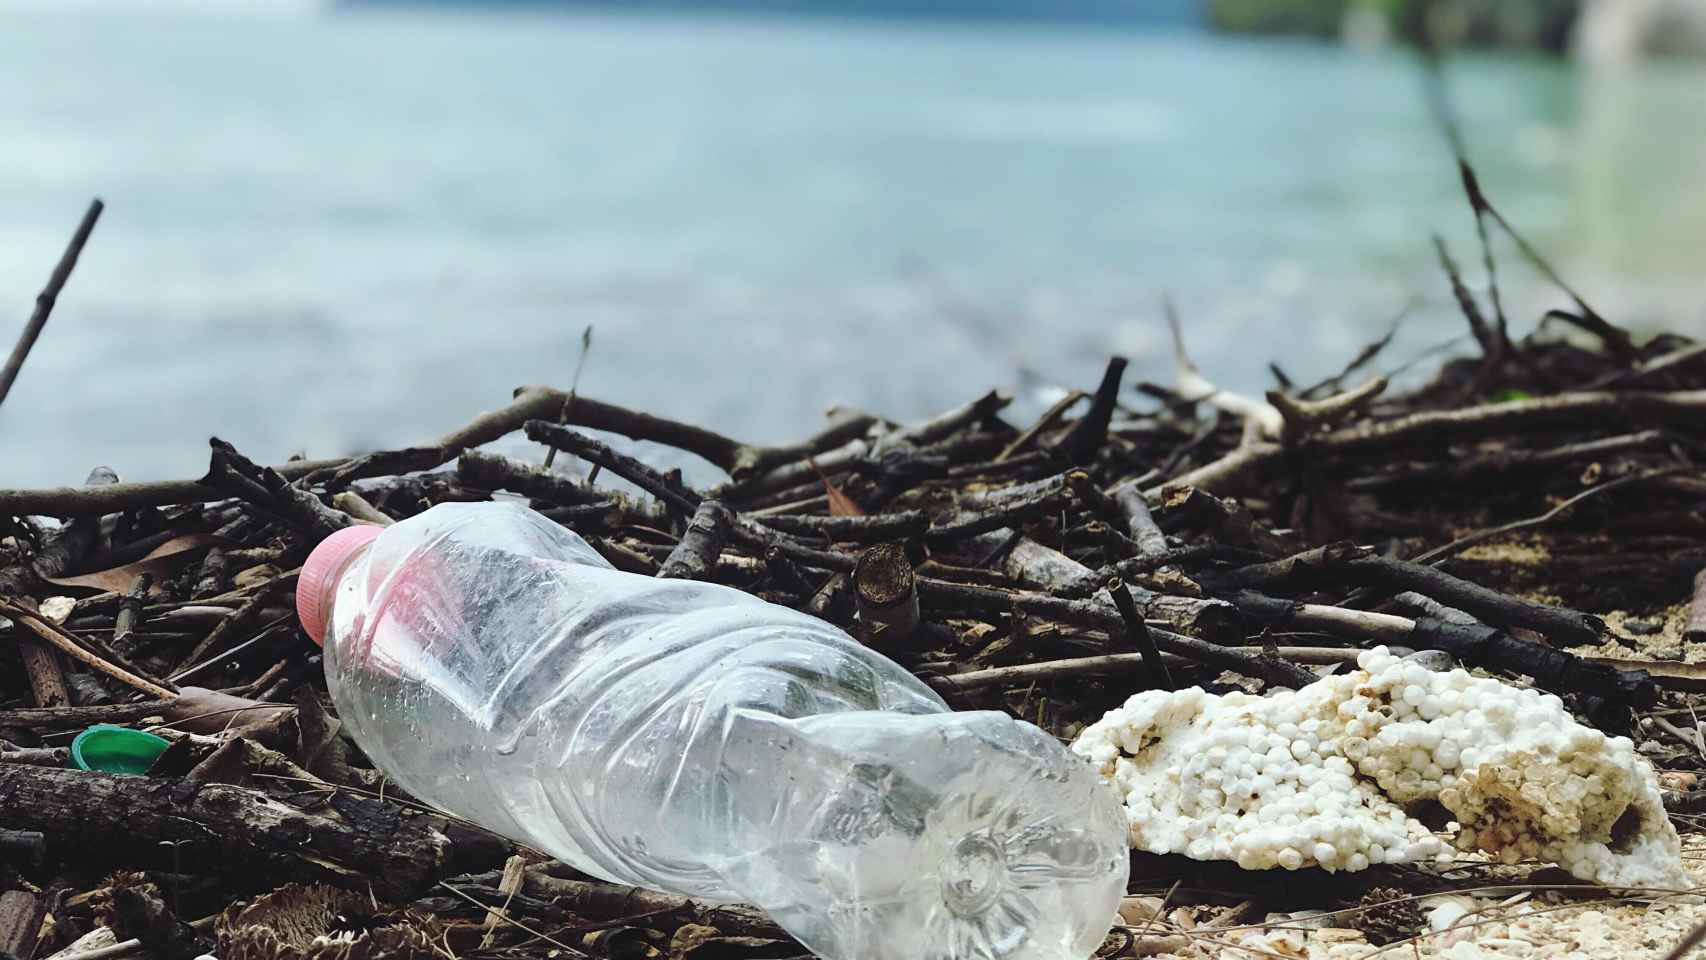 Los ecosistemas marinos sufren el efecto de no reciclar los plásticos